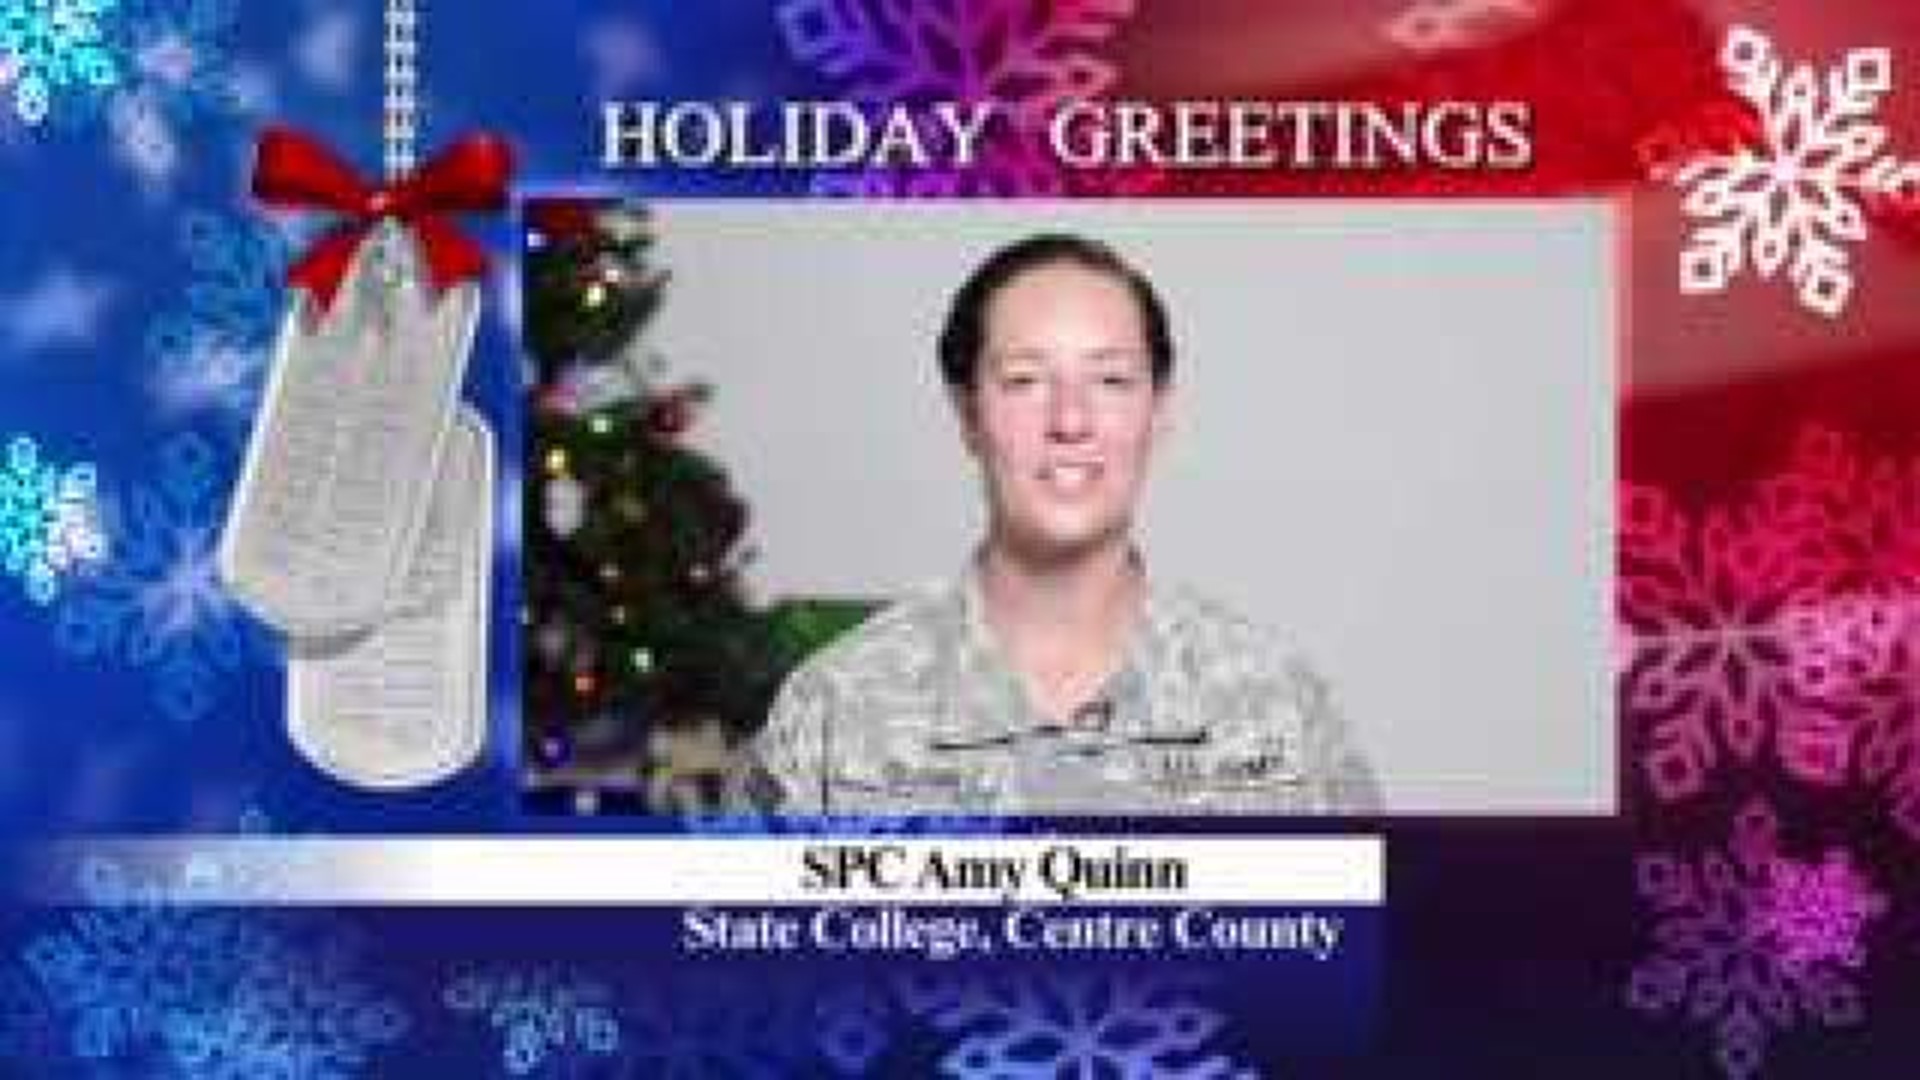 Army SPC Amy Quinn